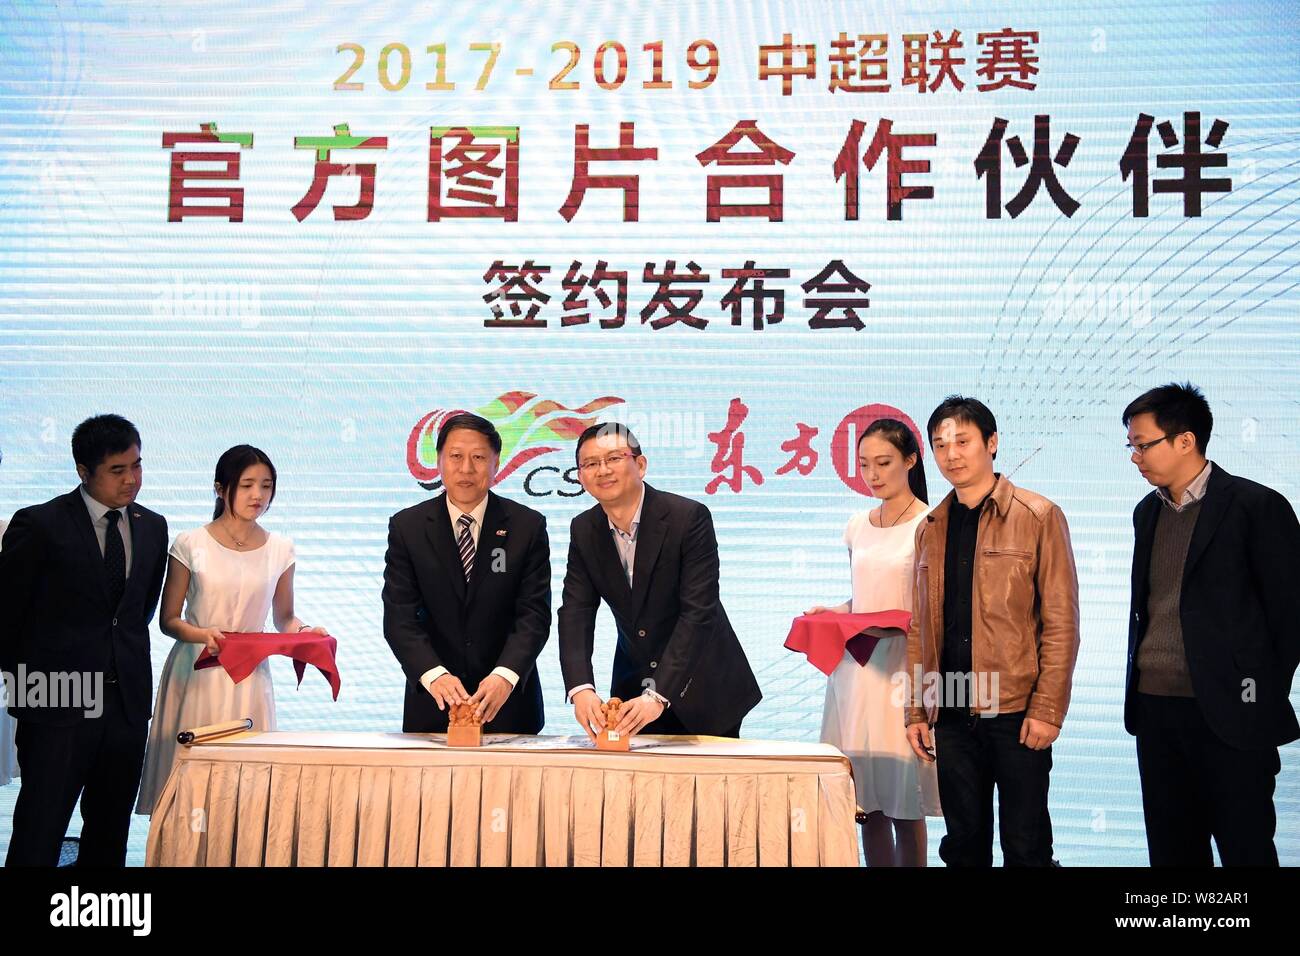 Ma Chengquan, la tercera a la izquierda, presidente de la Chinese Super League (CSL), Zan Kuang Zhanyu, centro, CEO de Imaginechina, sellos sellos durante una ceremonia de firma Foto de stock